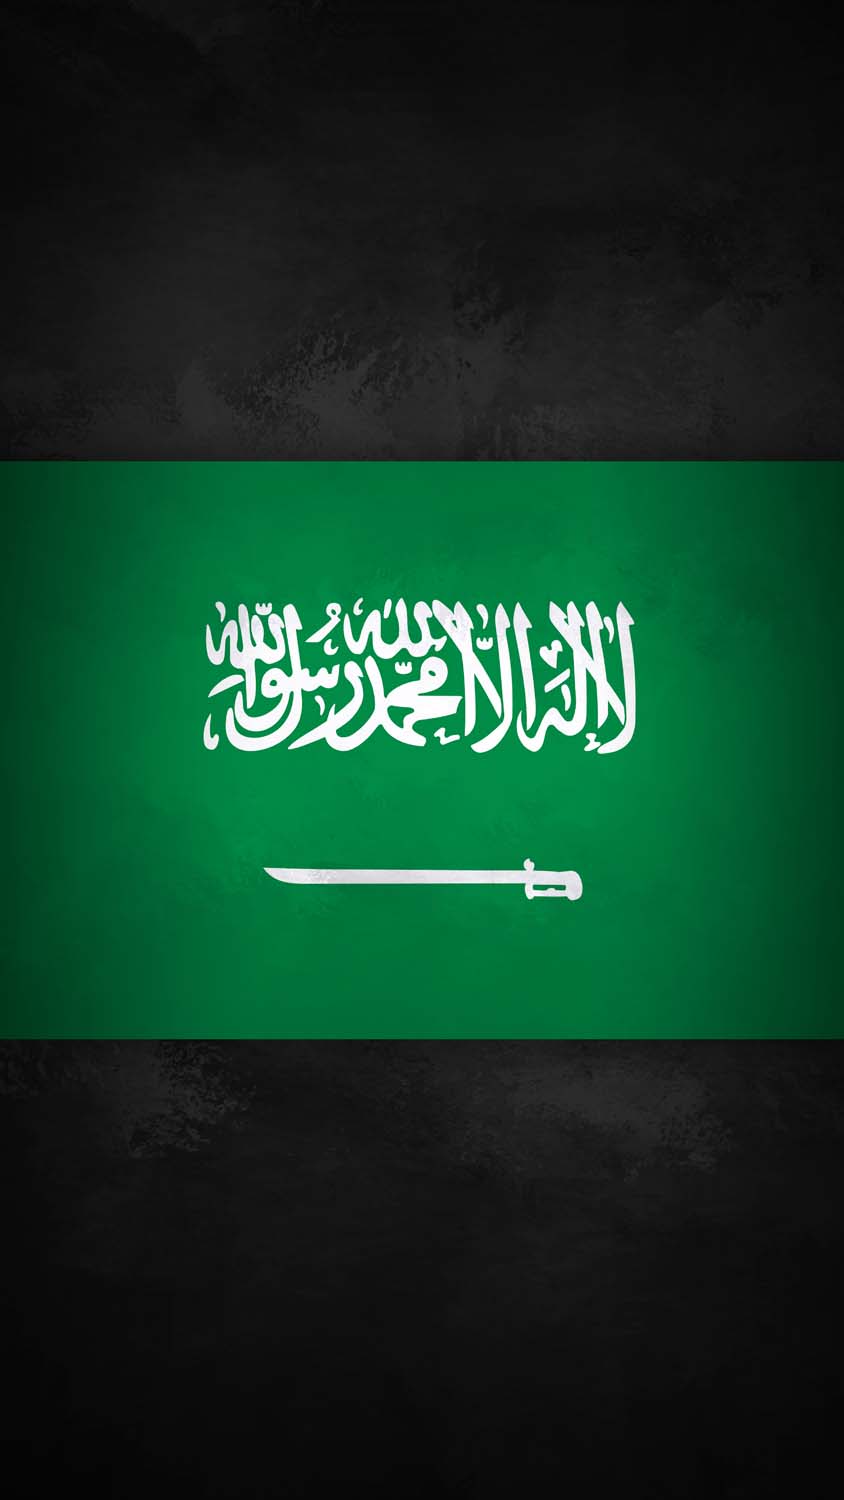 Saudi Arabia Flag iPhone Wallpaper 4K